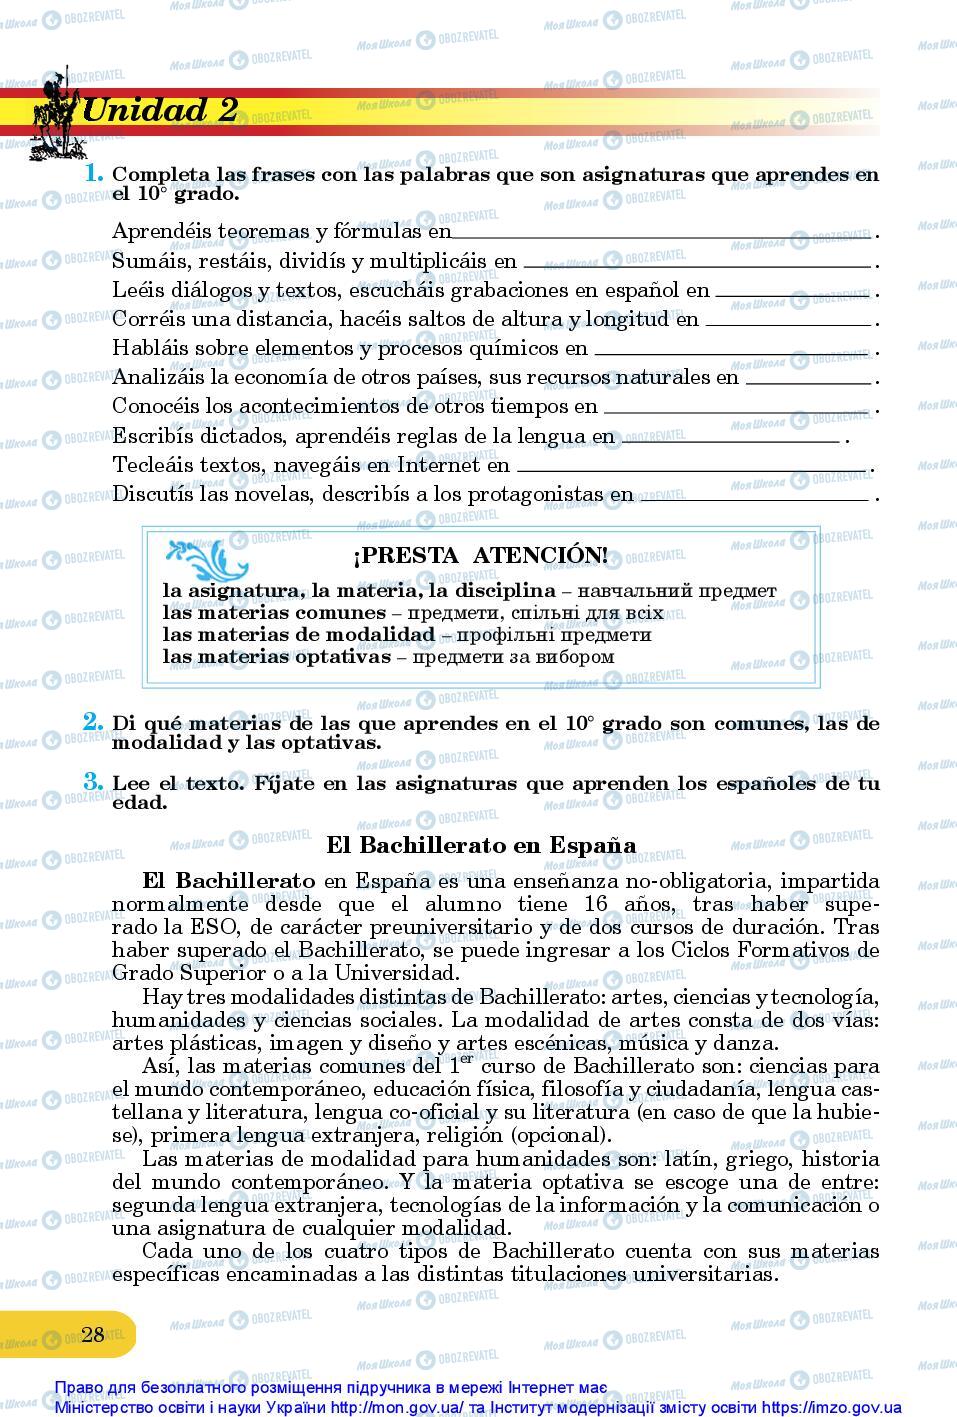 Підручники Іспанська мова 10 клас сторінка 28